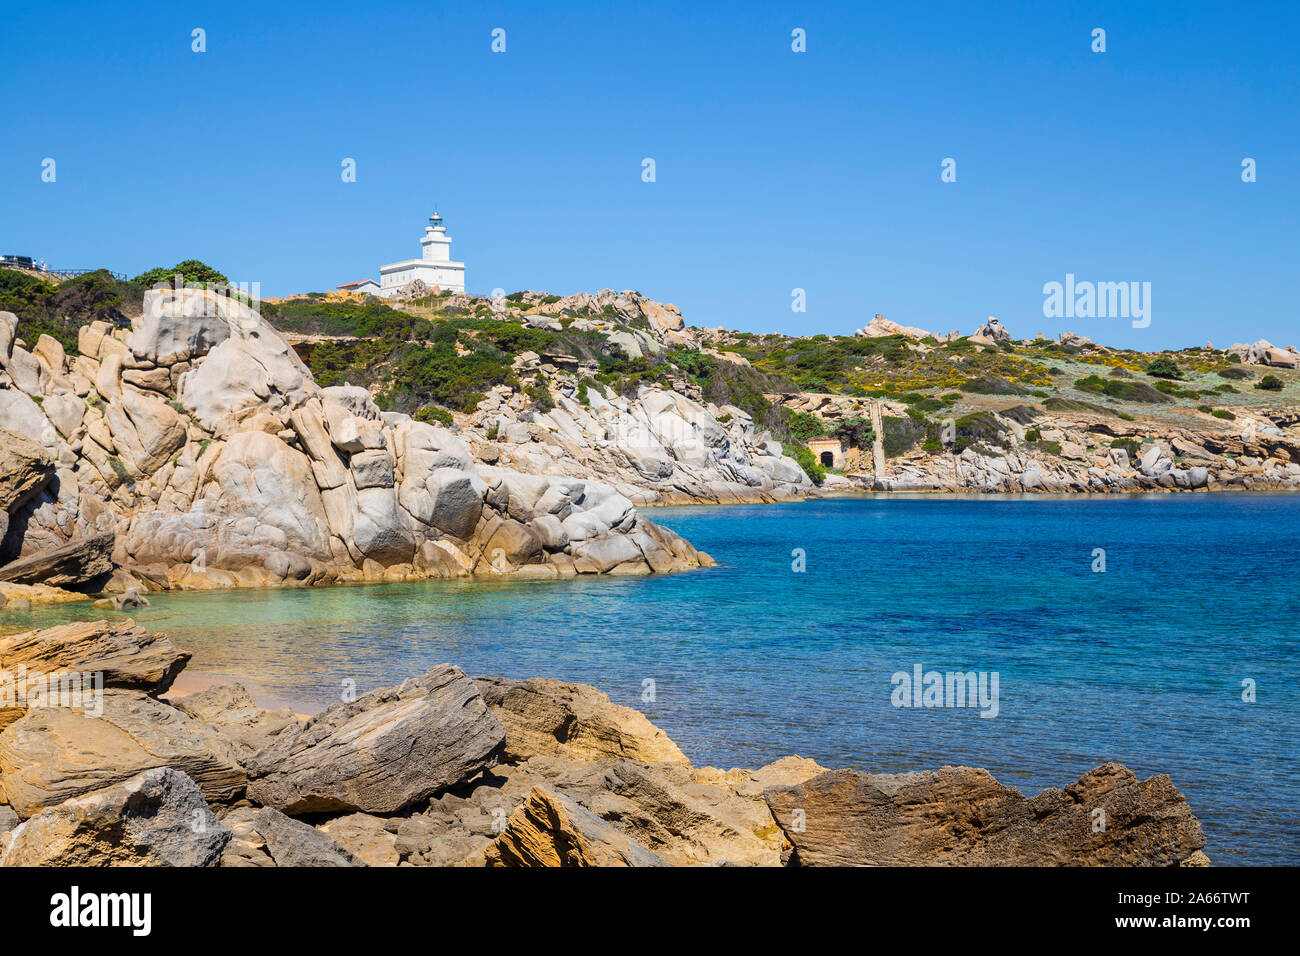 Italy, Sardinia, Santa Teresa Gallura, Capo Testa, Cala Spinosa cove and Lighthouse Stock Photo